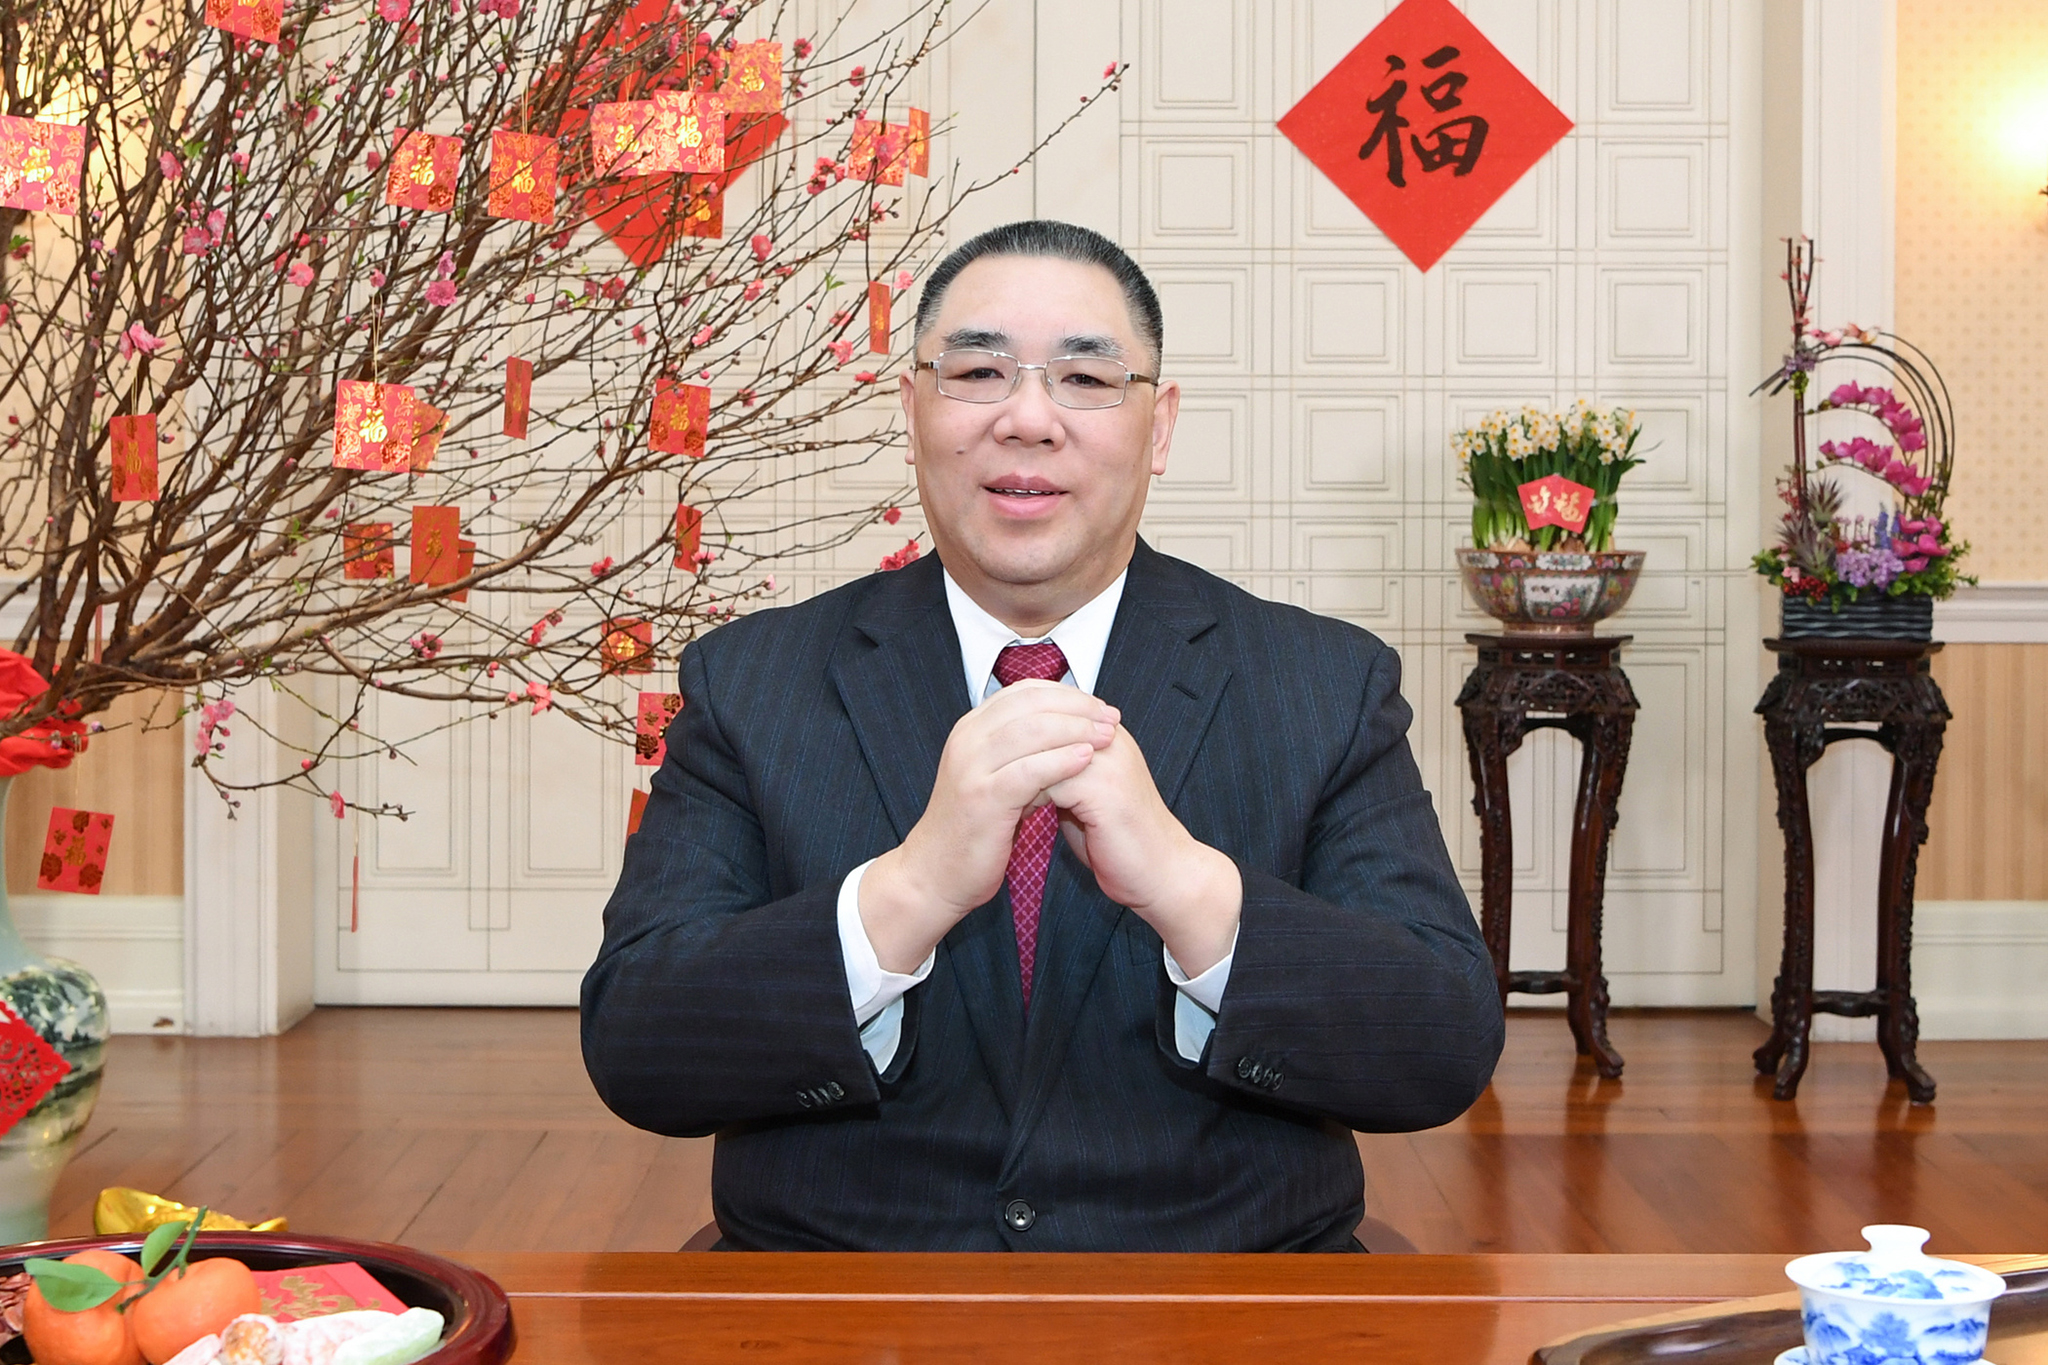 Chui Sai On | Chefe sublinha habitação e centro histórico na sua mensagem de Ano Novo Chinês